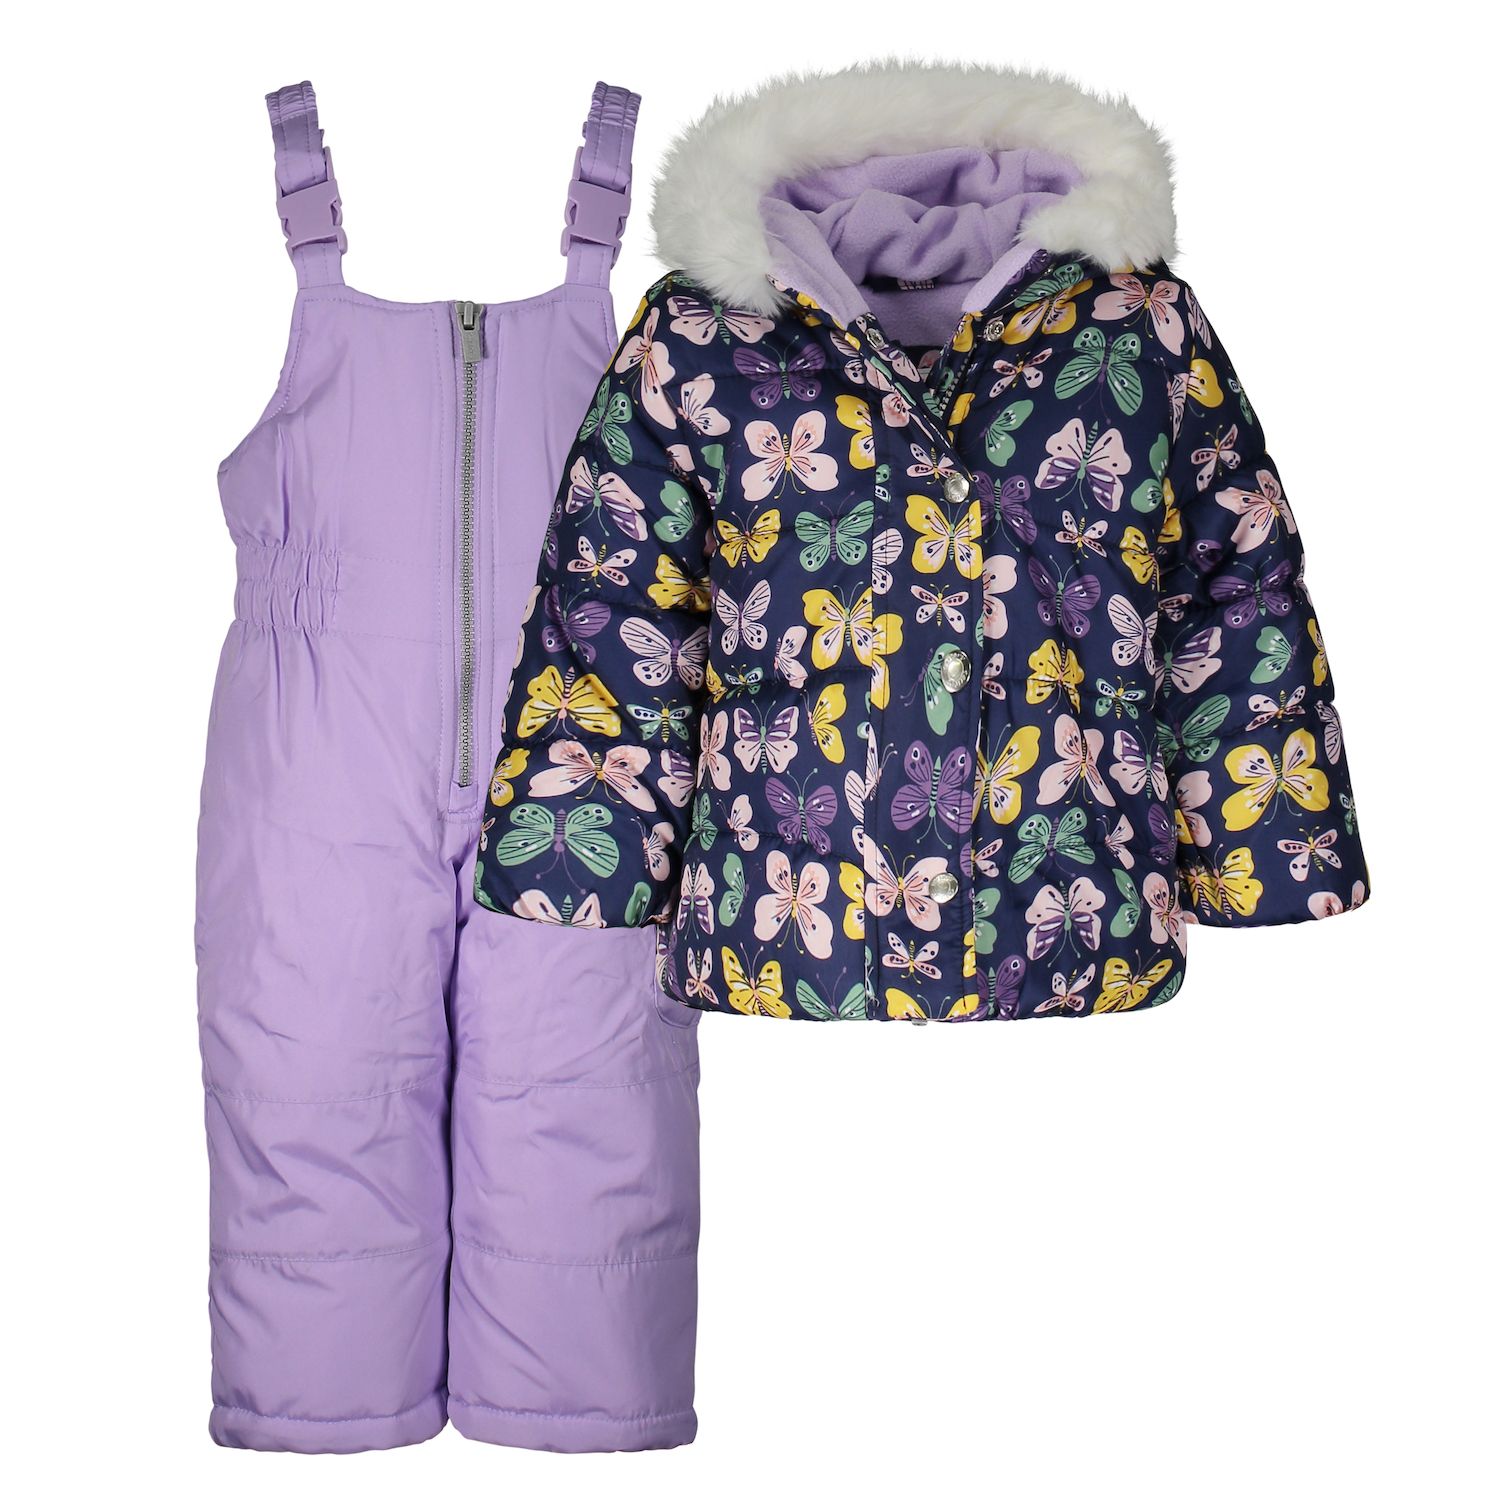 infant girl snowsuits sale